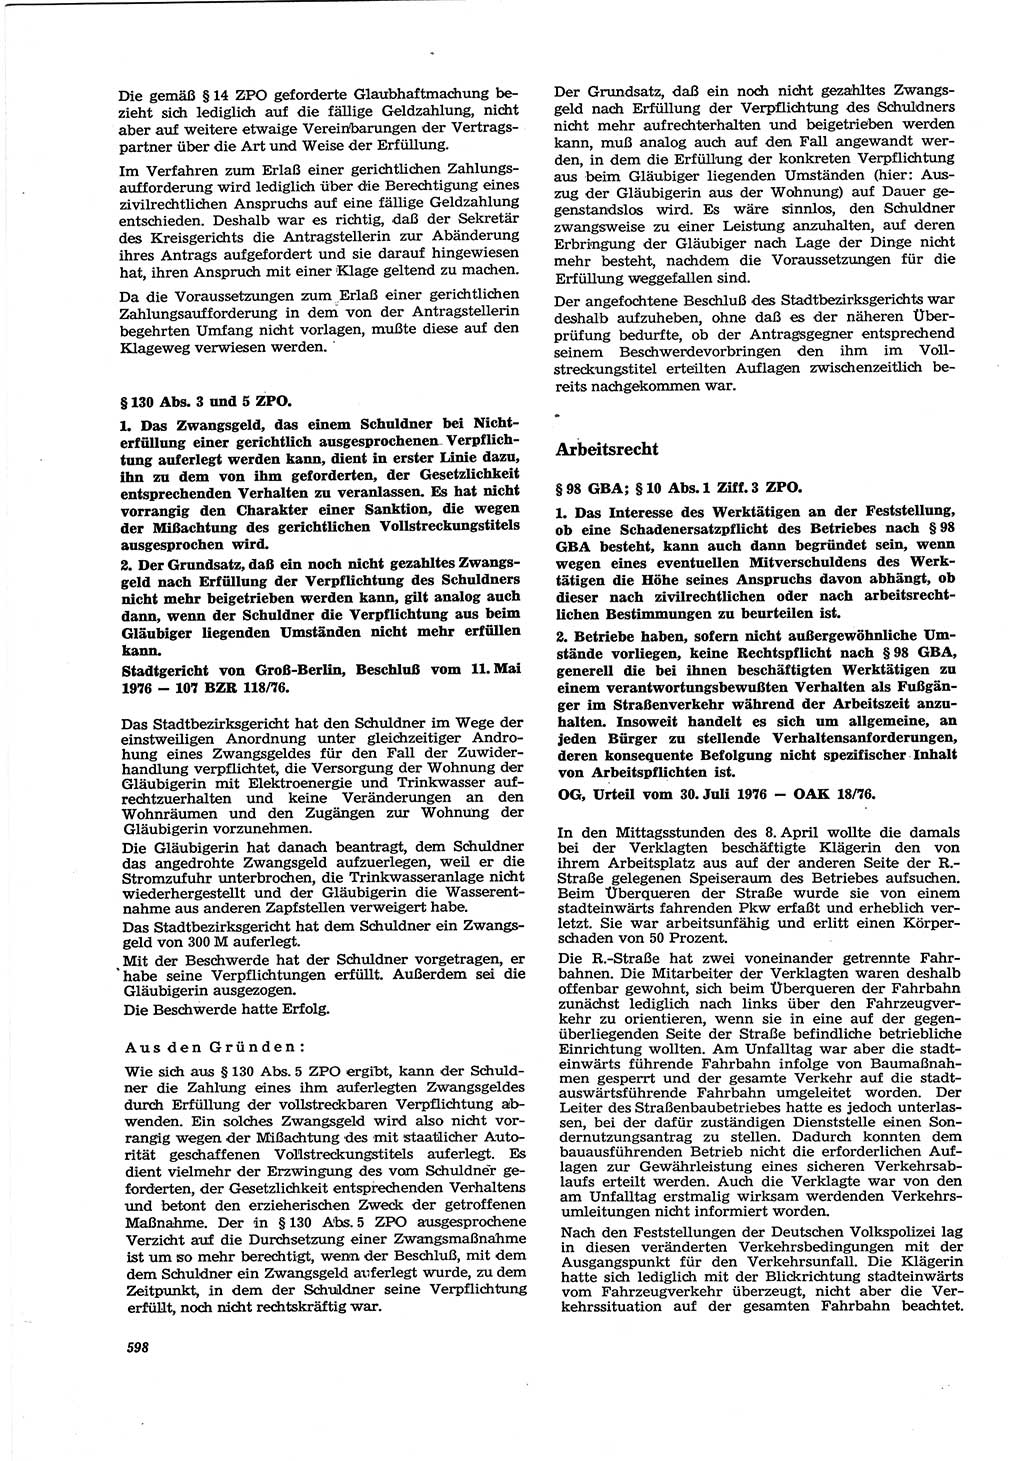 Neue Justiz (NJ), Zeitschrift für Recht und Rechtswissenschaft [Deutsche Demokratische Republik (DDR)], 30. Jahrgang 1976, Seite 598 (NJ DDR 1976, S. 598)